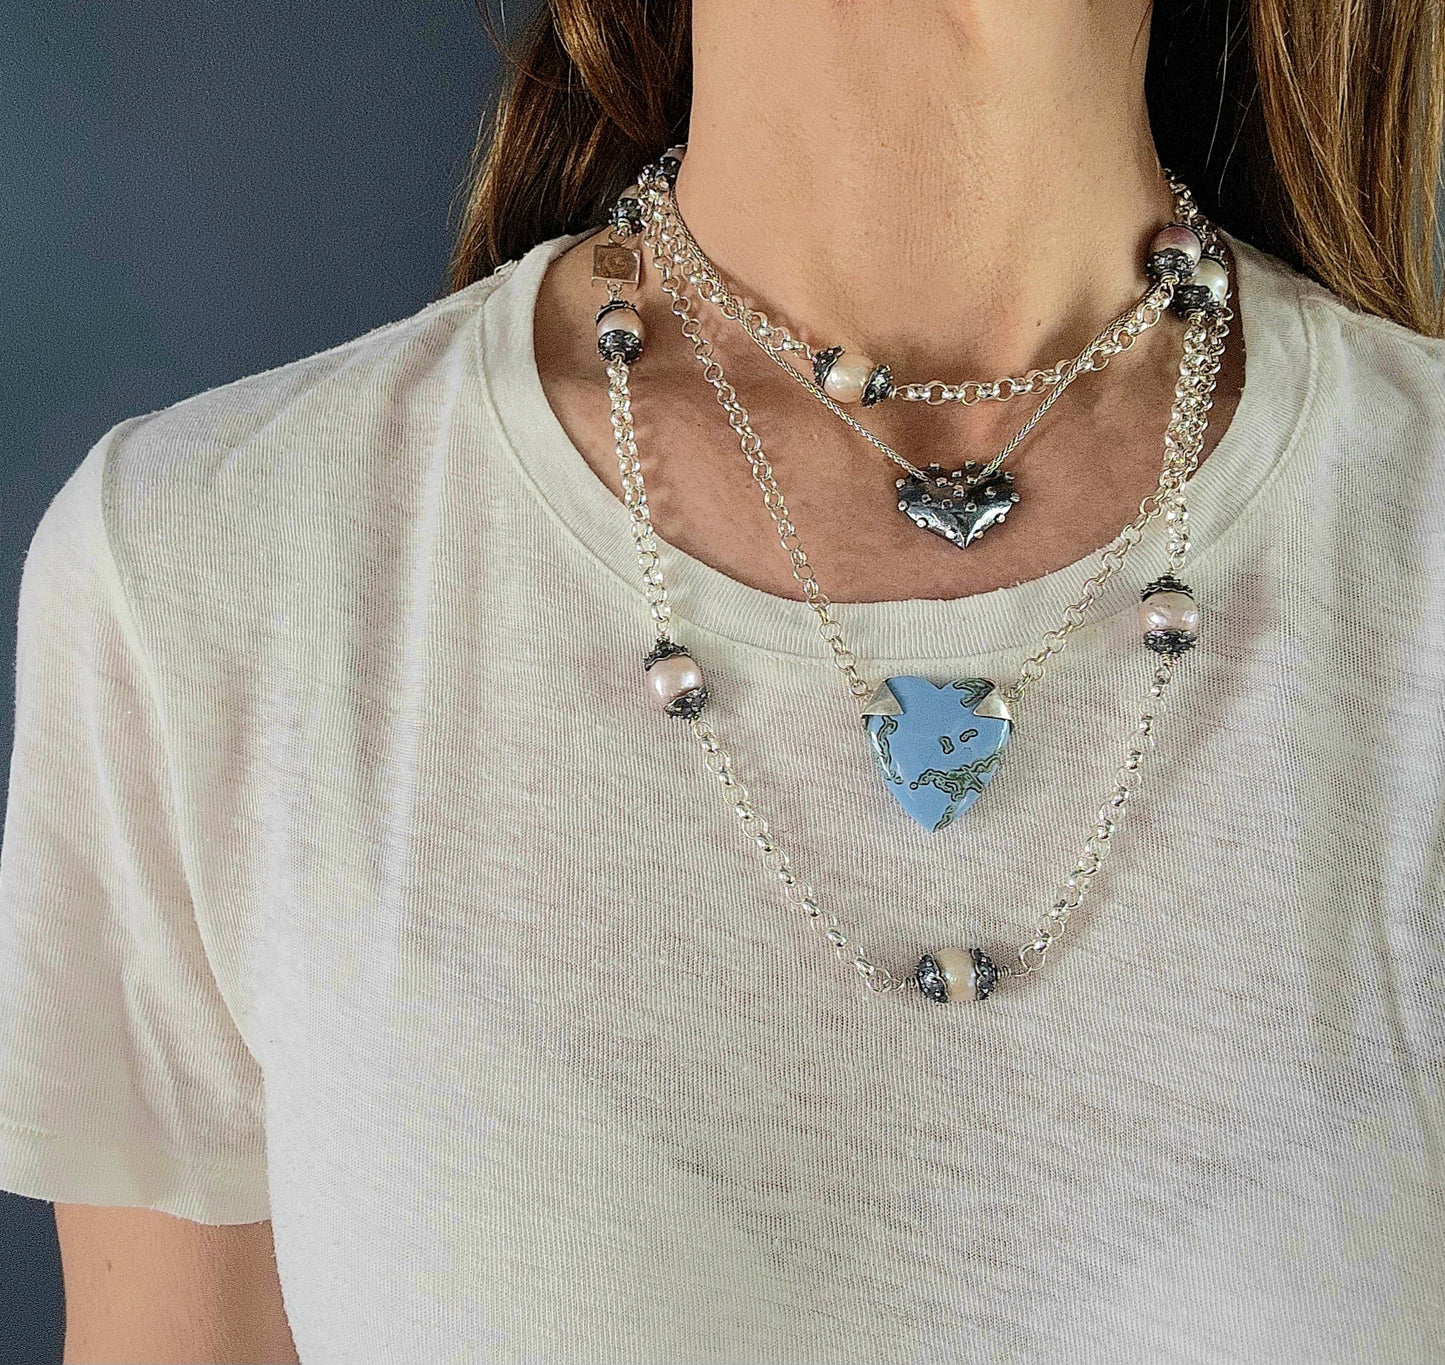 Blue Opal Heart Pendant Necklace